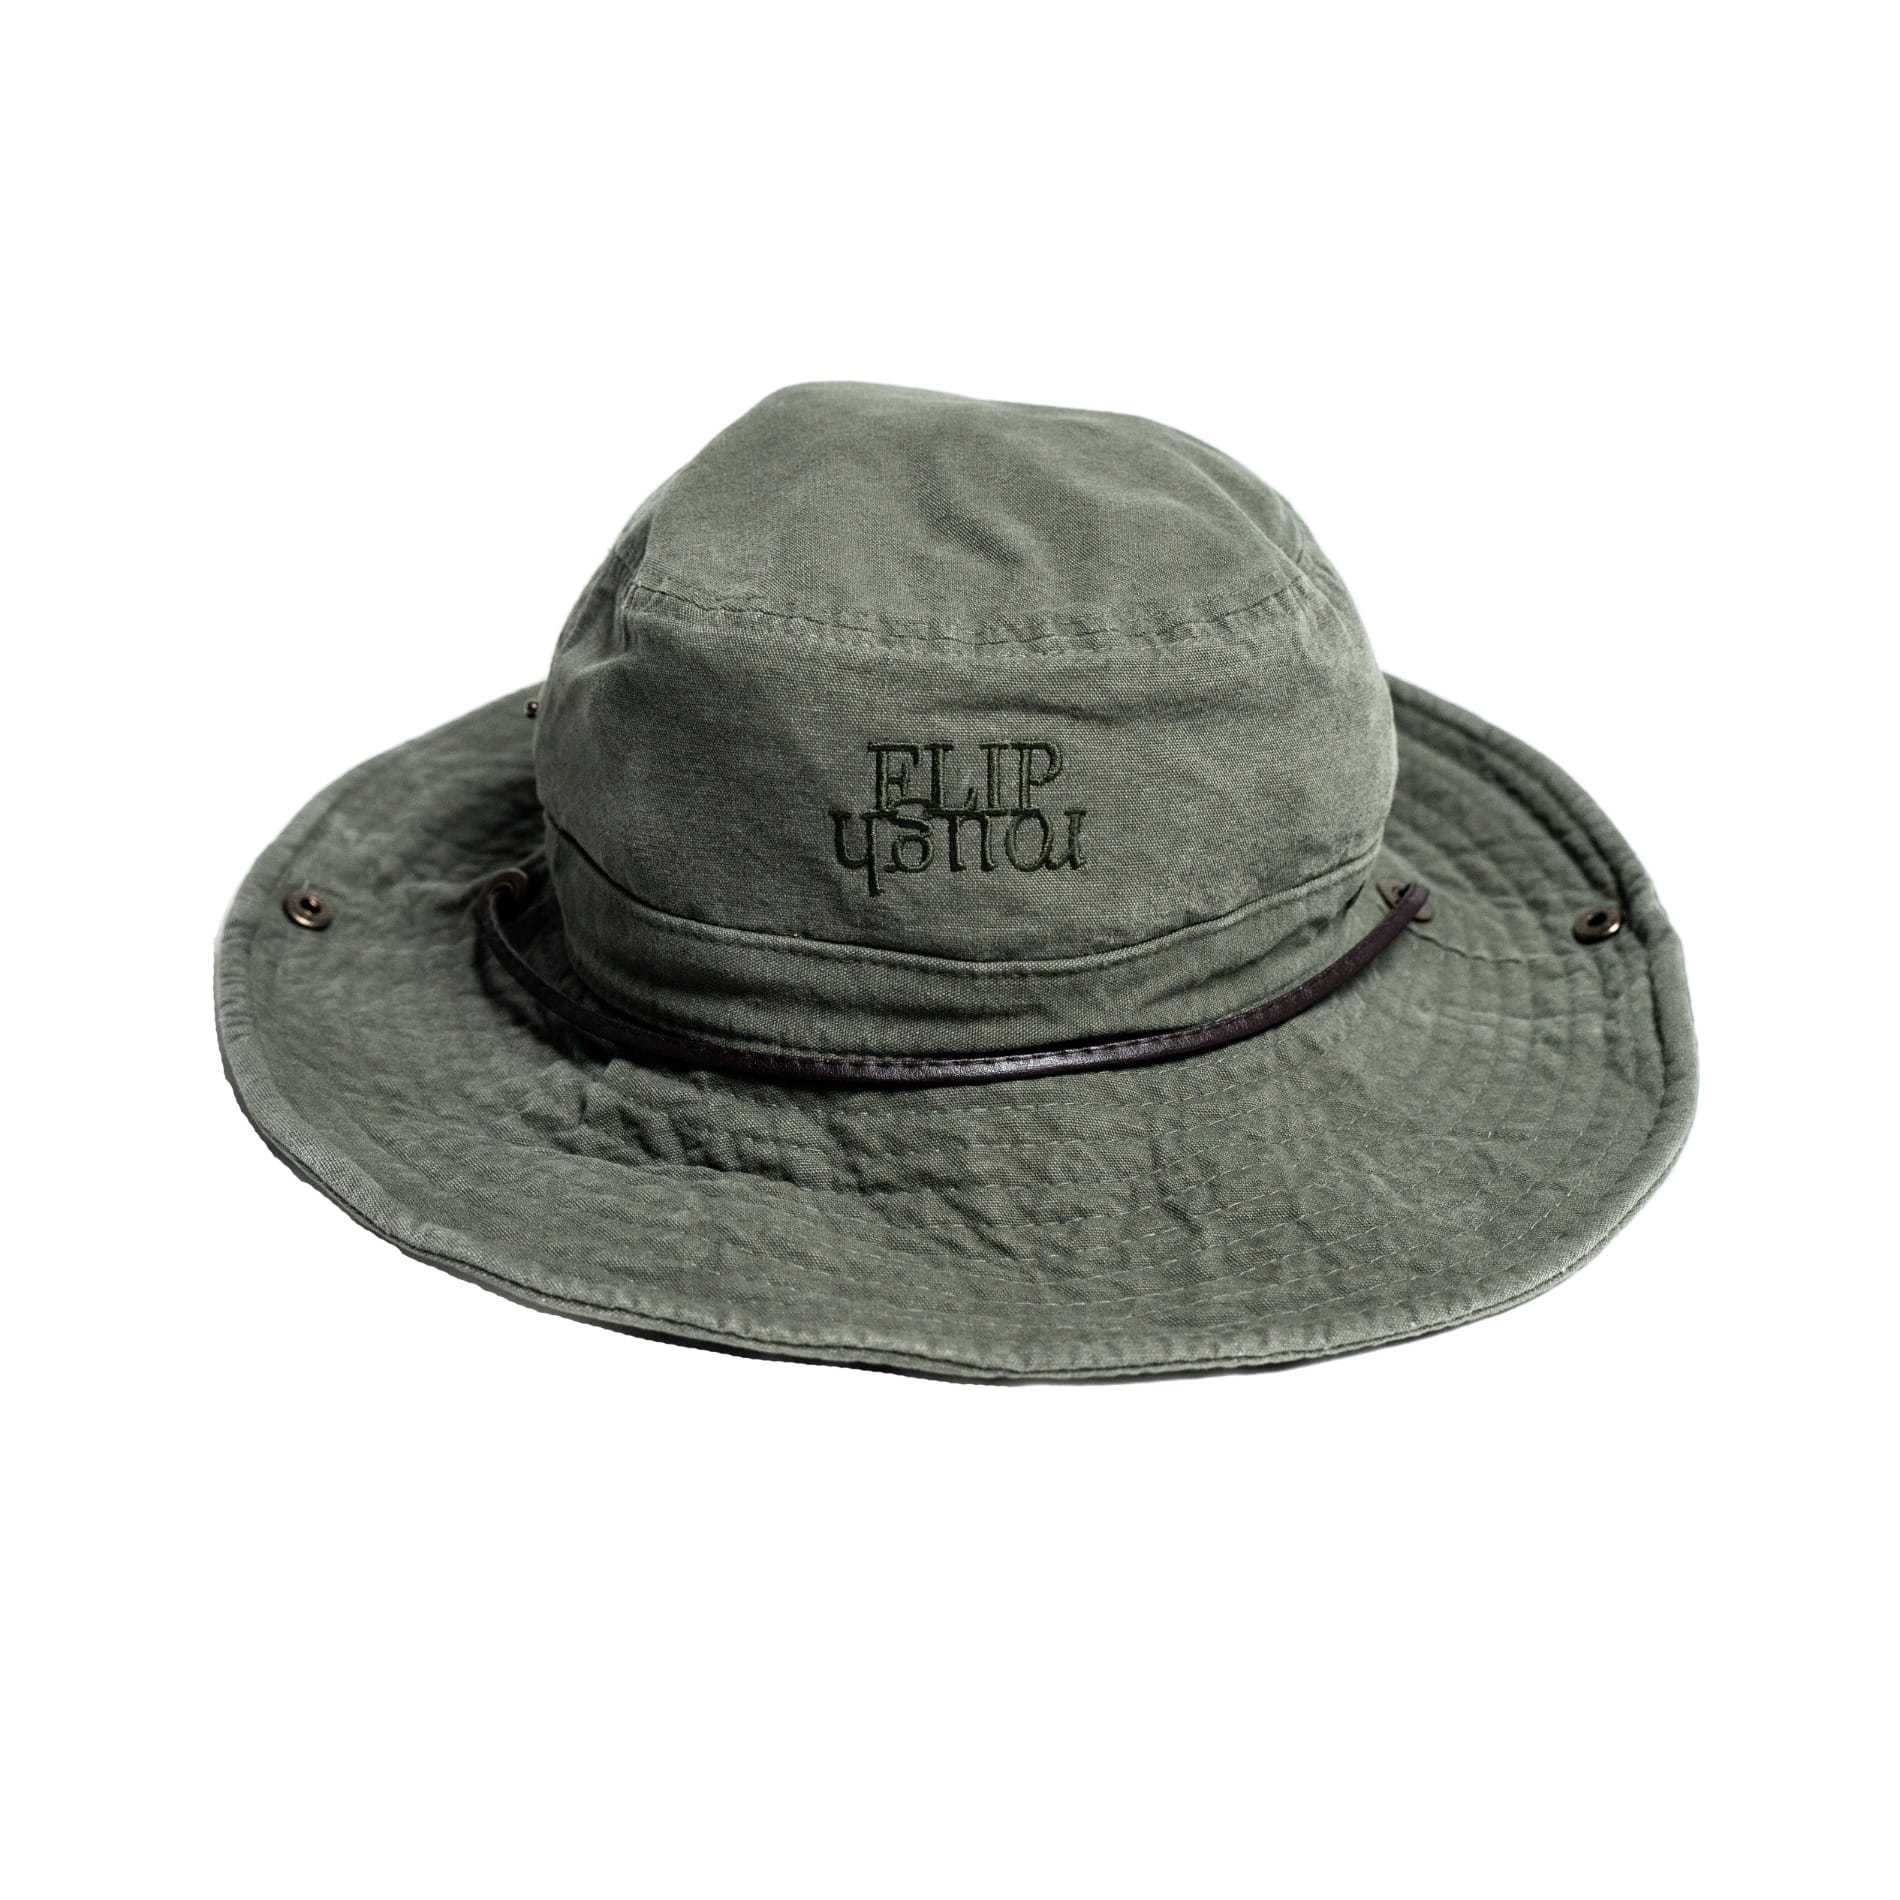 FLIPROUGH Boonie hat - Khaki